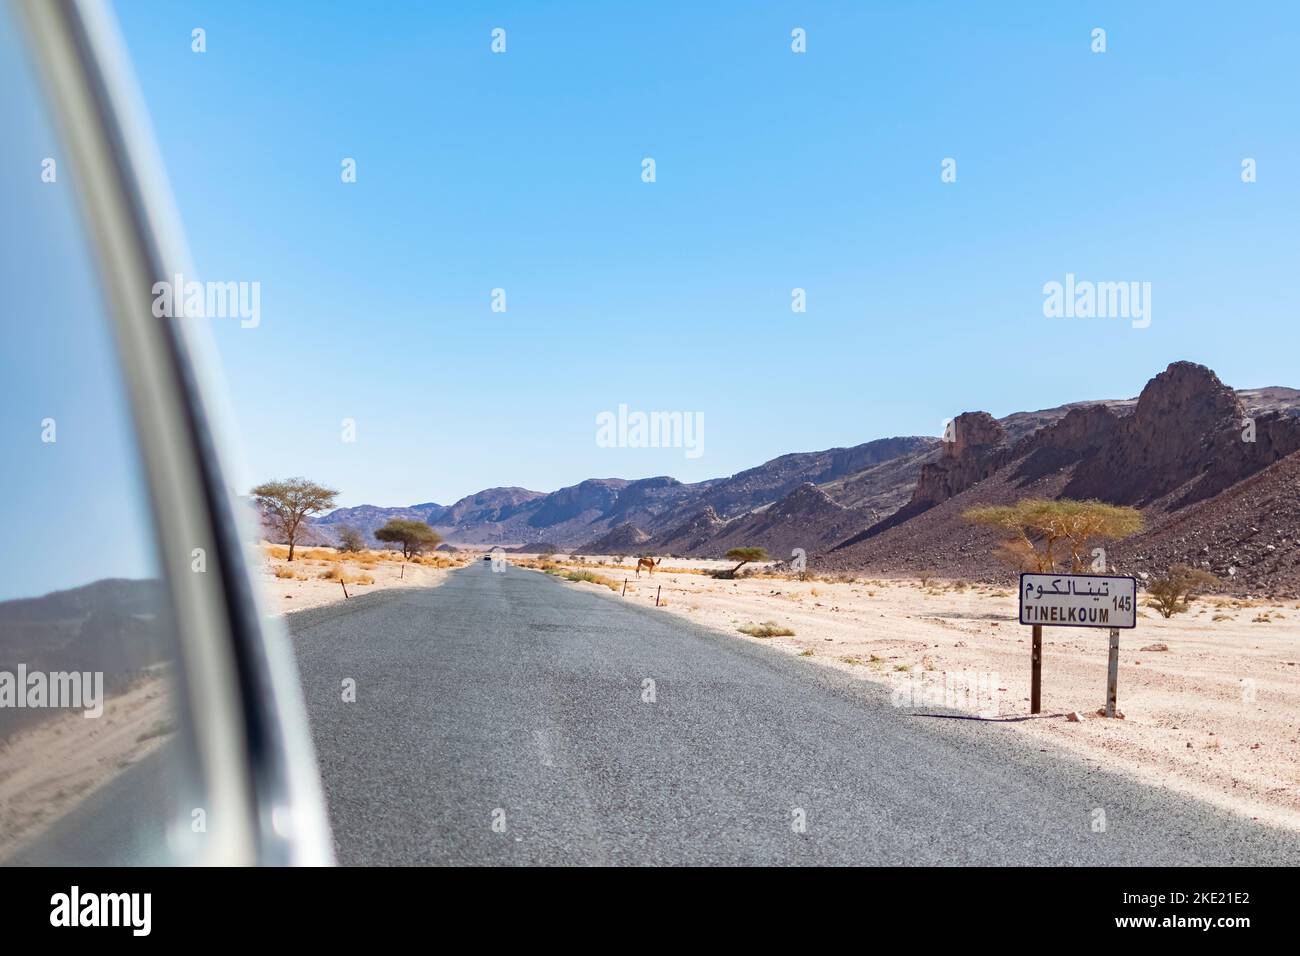 Tin El Koum, Algérie. Vue de la fenêtre arrière de voiture 4X4 Tinelkoum Desert Road plaque avec un dromadaire sur le reg, les montagnes Rocheuses et le ciel bleu. Banque D'Images